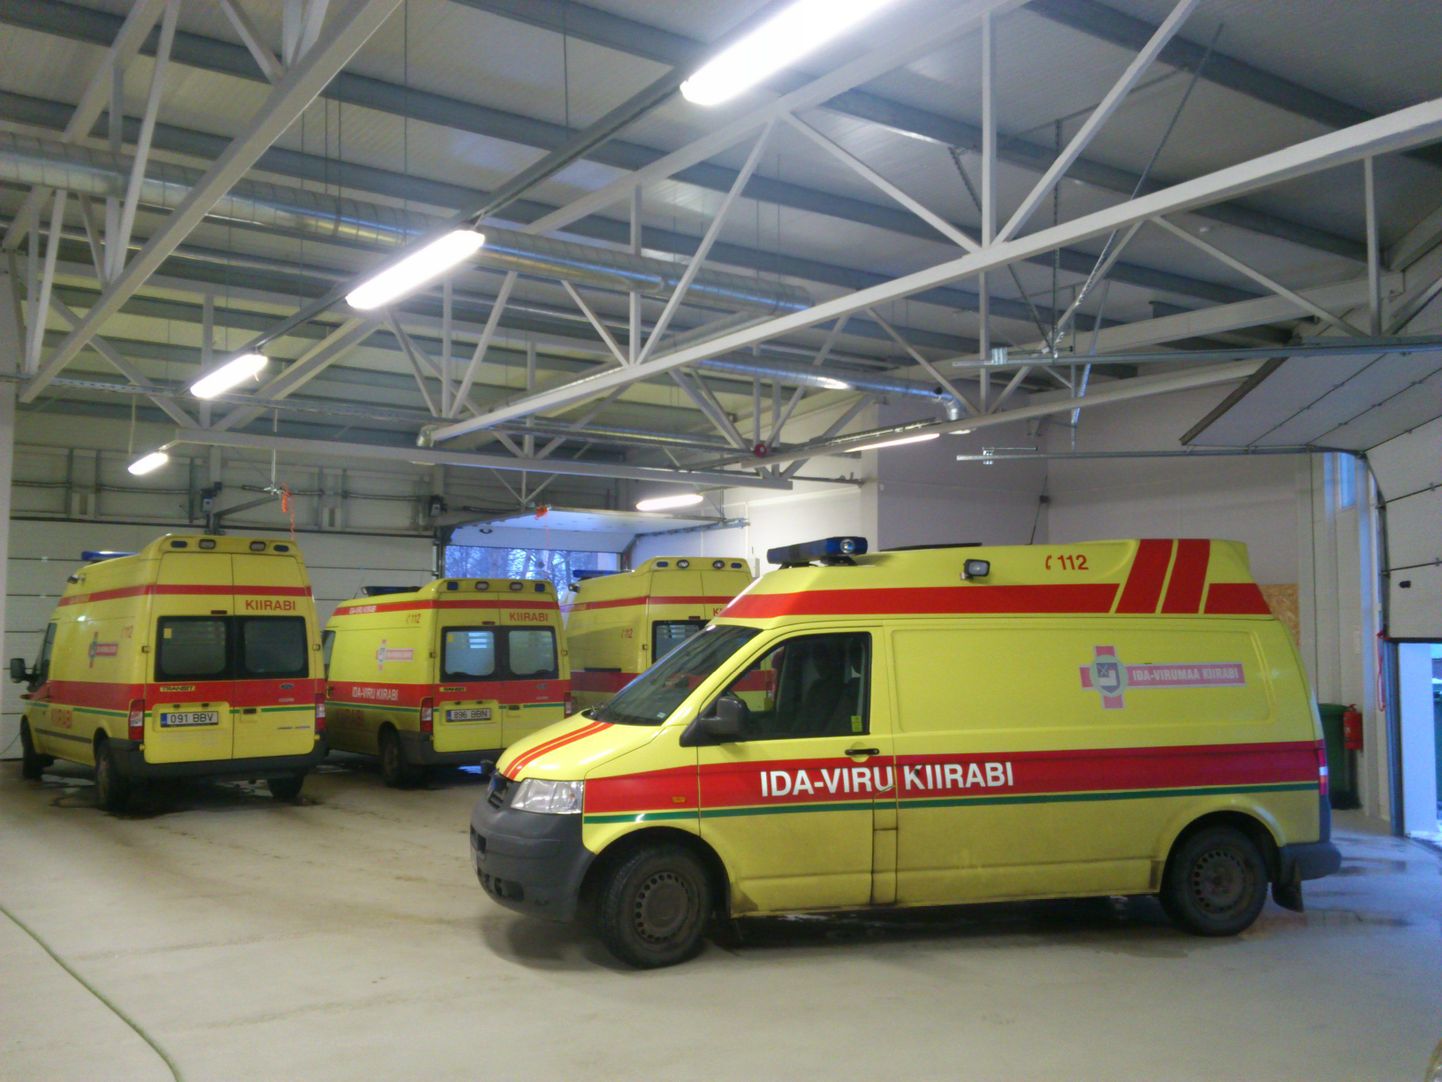 Автомобили скорой помощи, принадлежащие фирме IDA-VIRU KIIRABI, обслуживают регион до конца года.